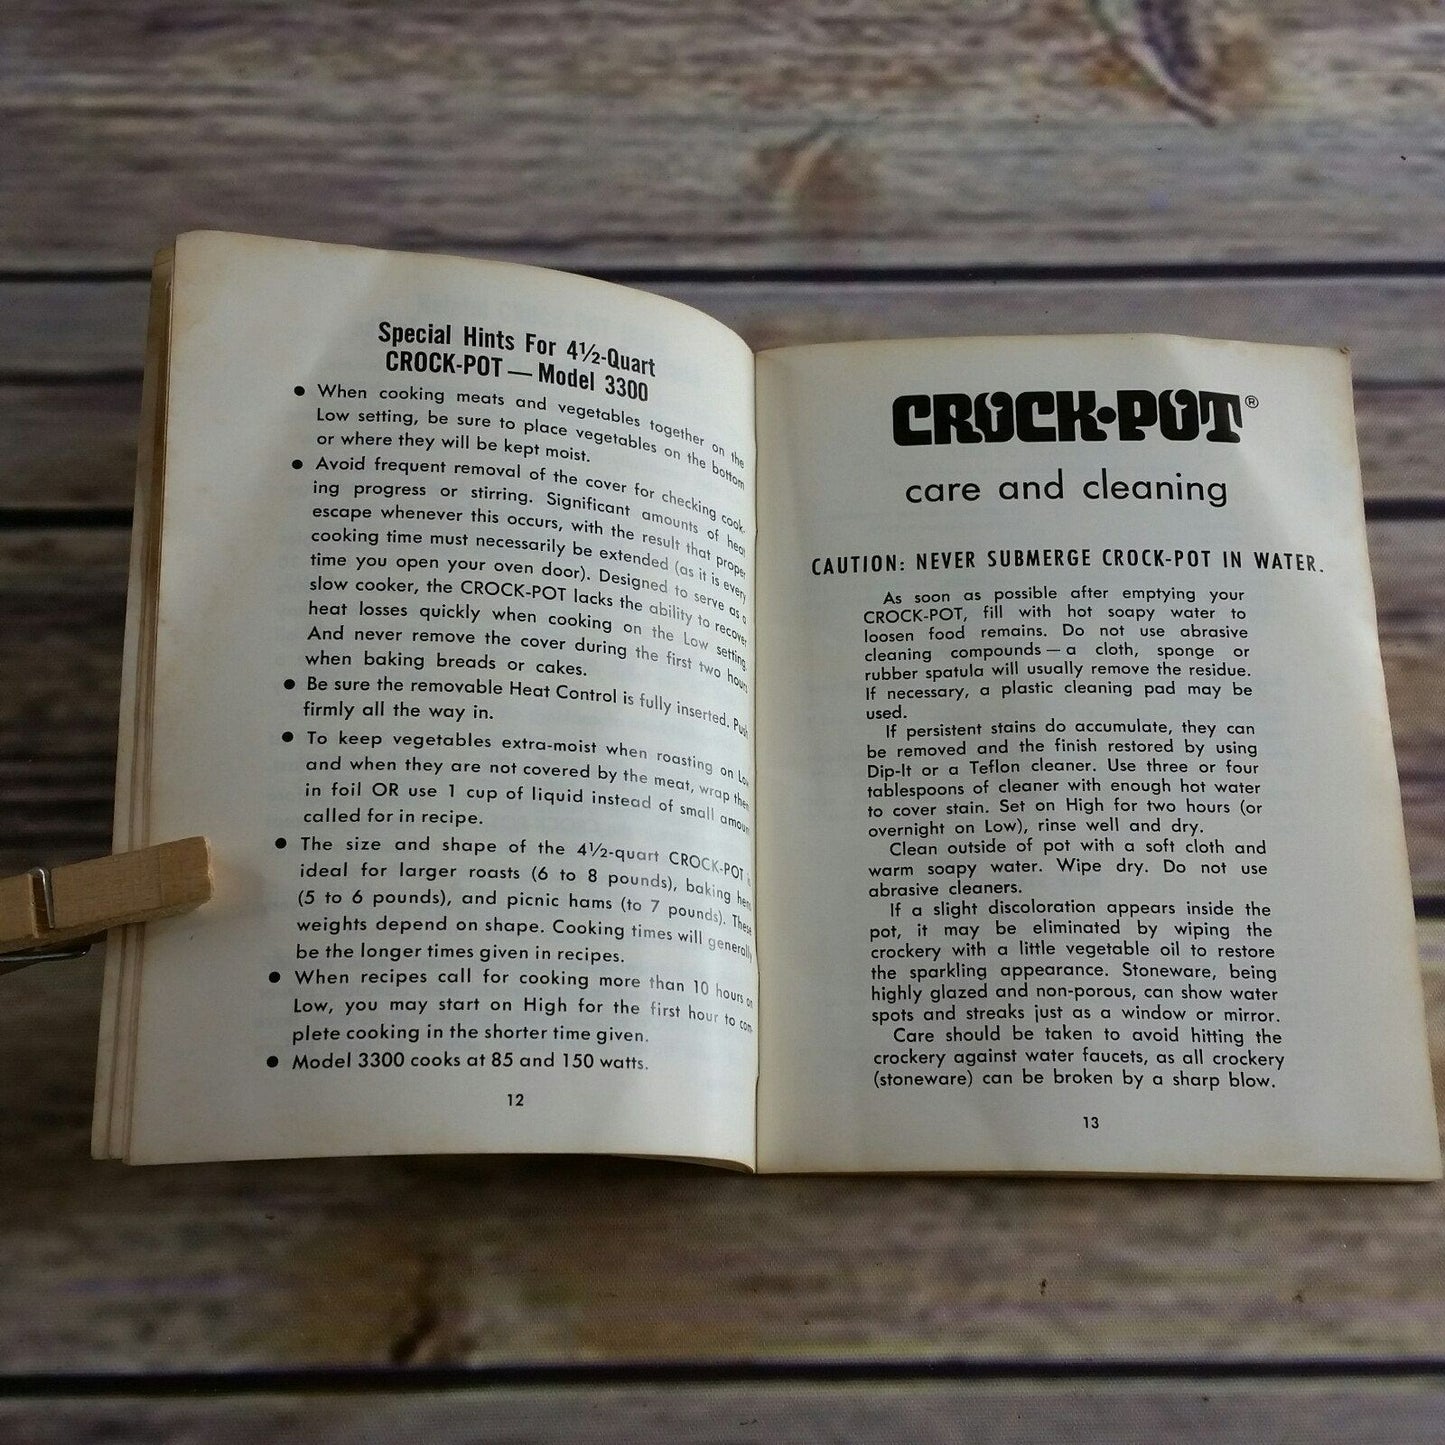 Vintage Rival Crock Pot Cookbook Owner's Manual Model Recipes Slow Cooker 3300 3100-3103 Paperback Booklet